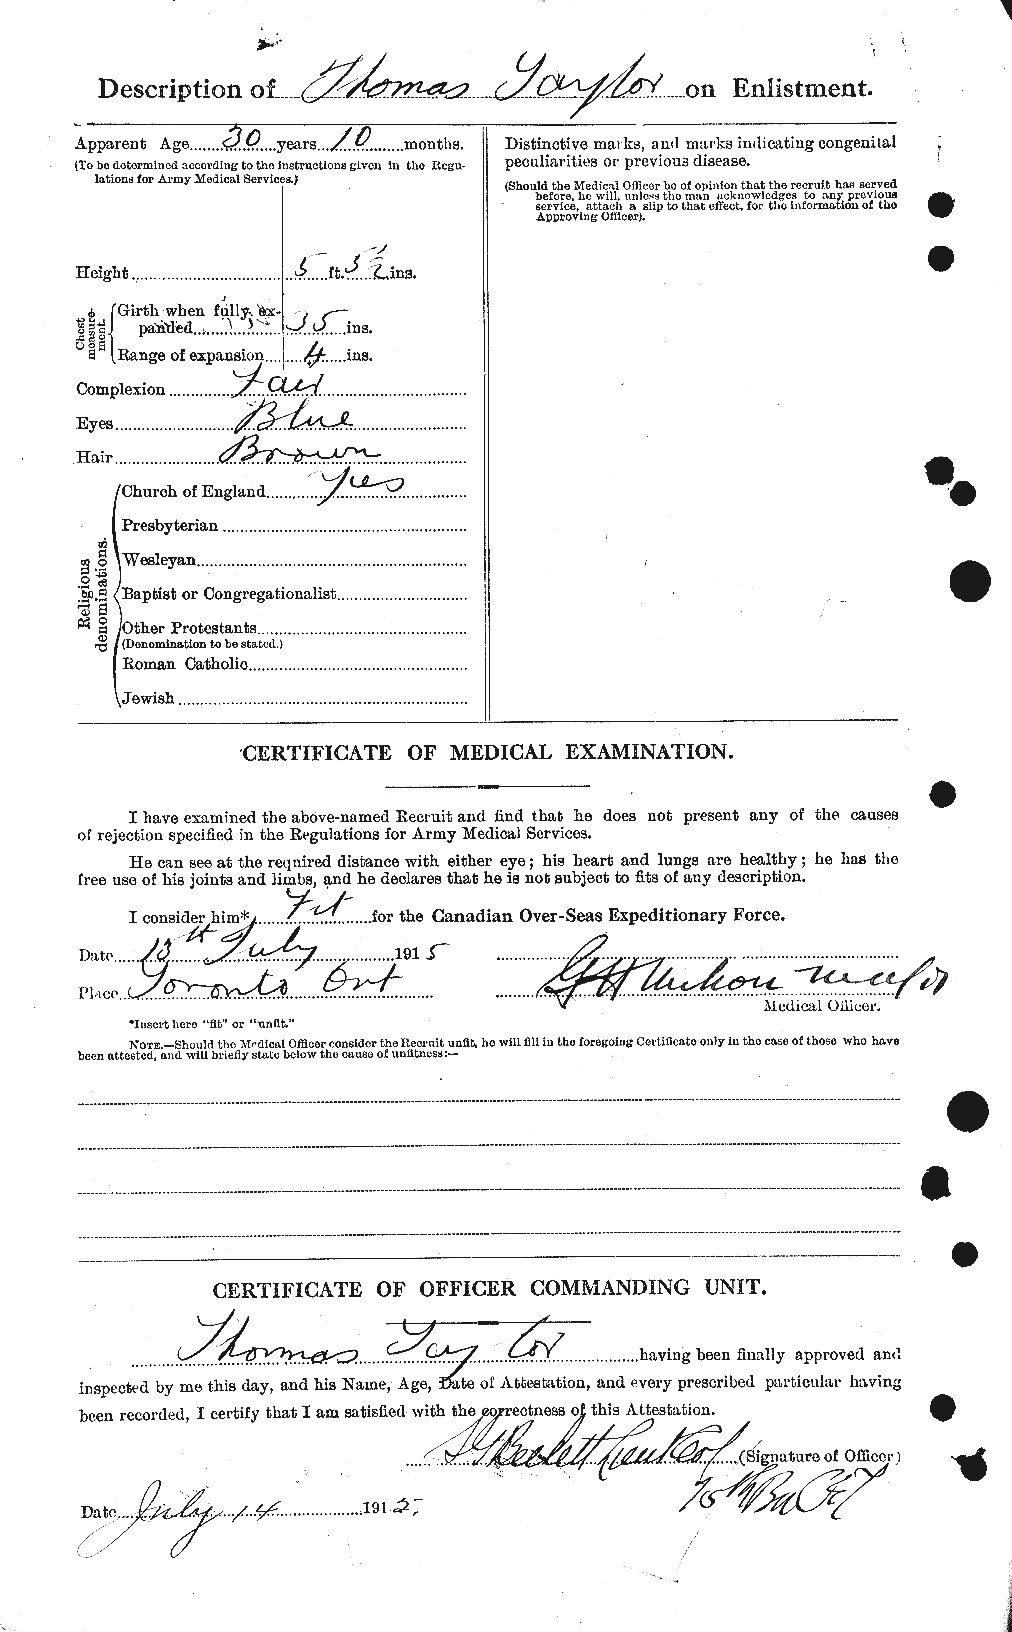 Dossiers du Personnel de la Première Guerre mondiale - CEC 627958b